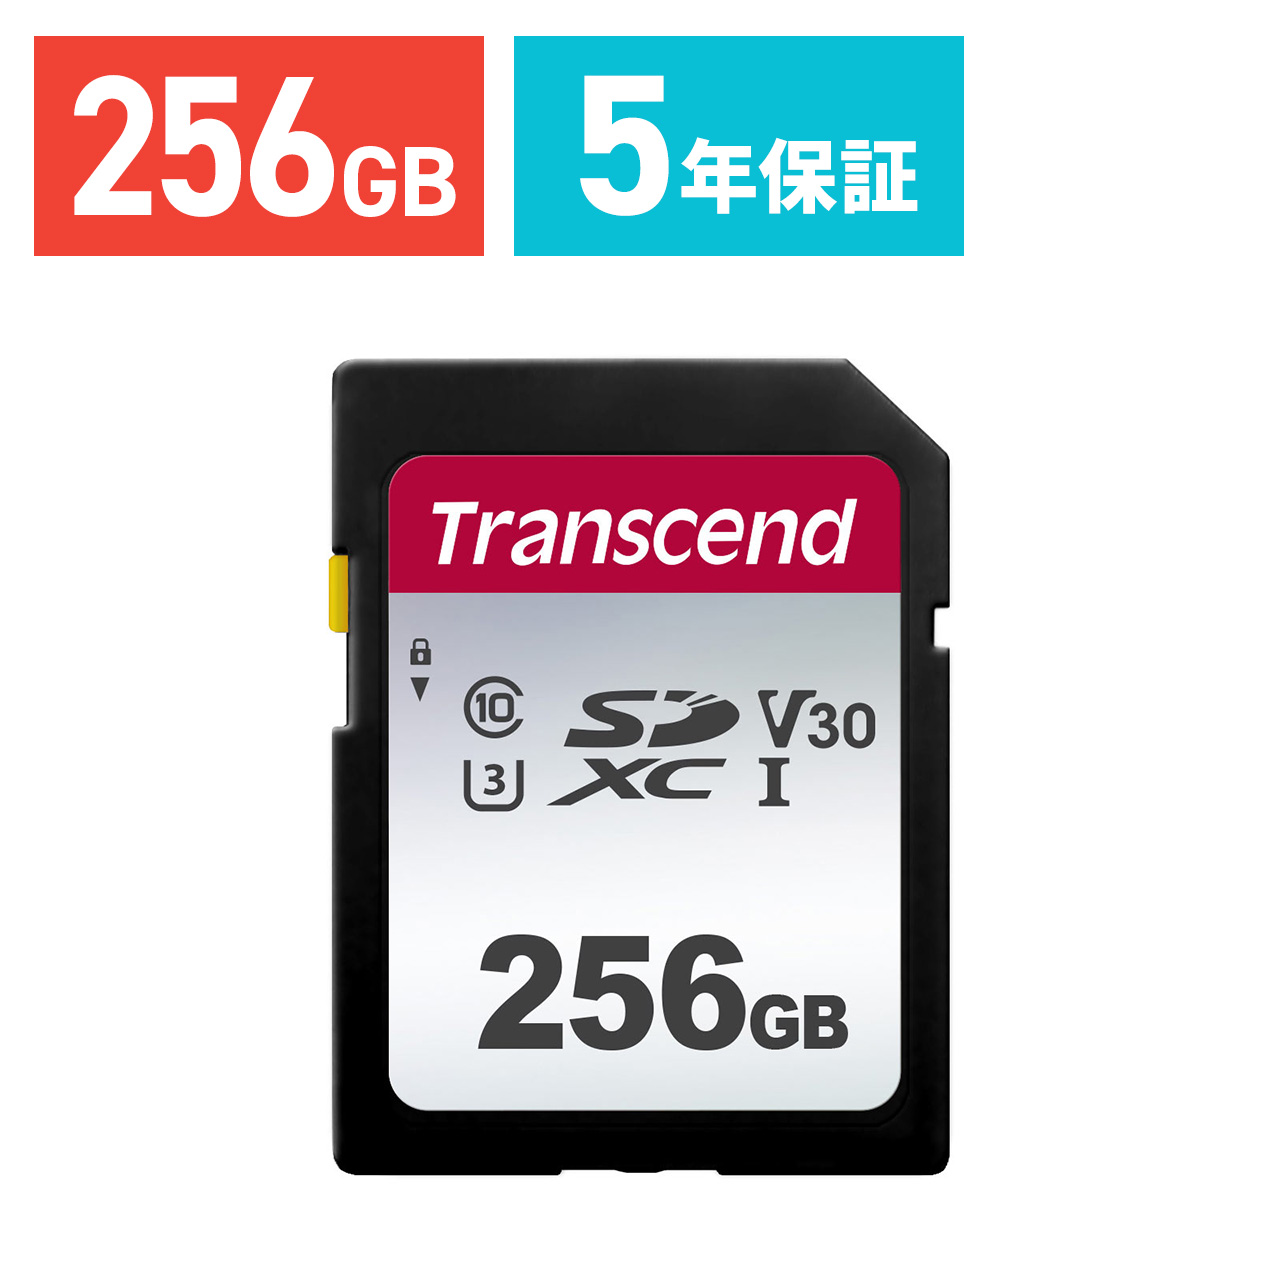 MicroSDカード 256GB UHS-I V30 超高速最大95MB sec 3D MLC NAND採用 ASチップ microSDXC 300x SDカード変換アダプタ USBカードリーダー付き 6ヶ月保証